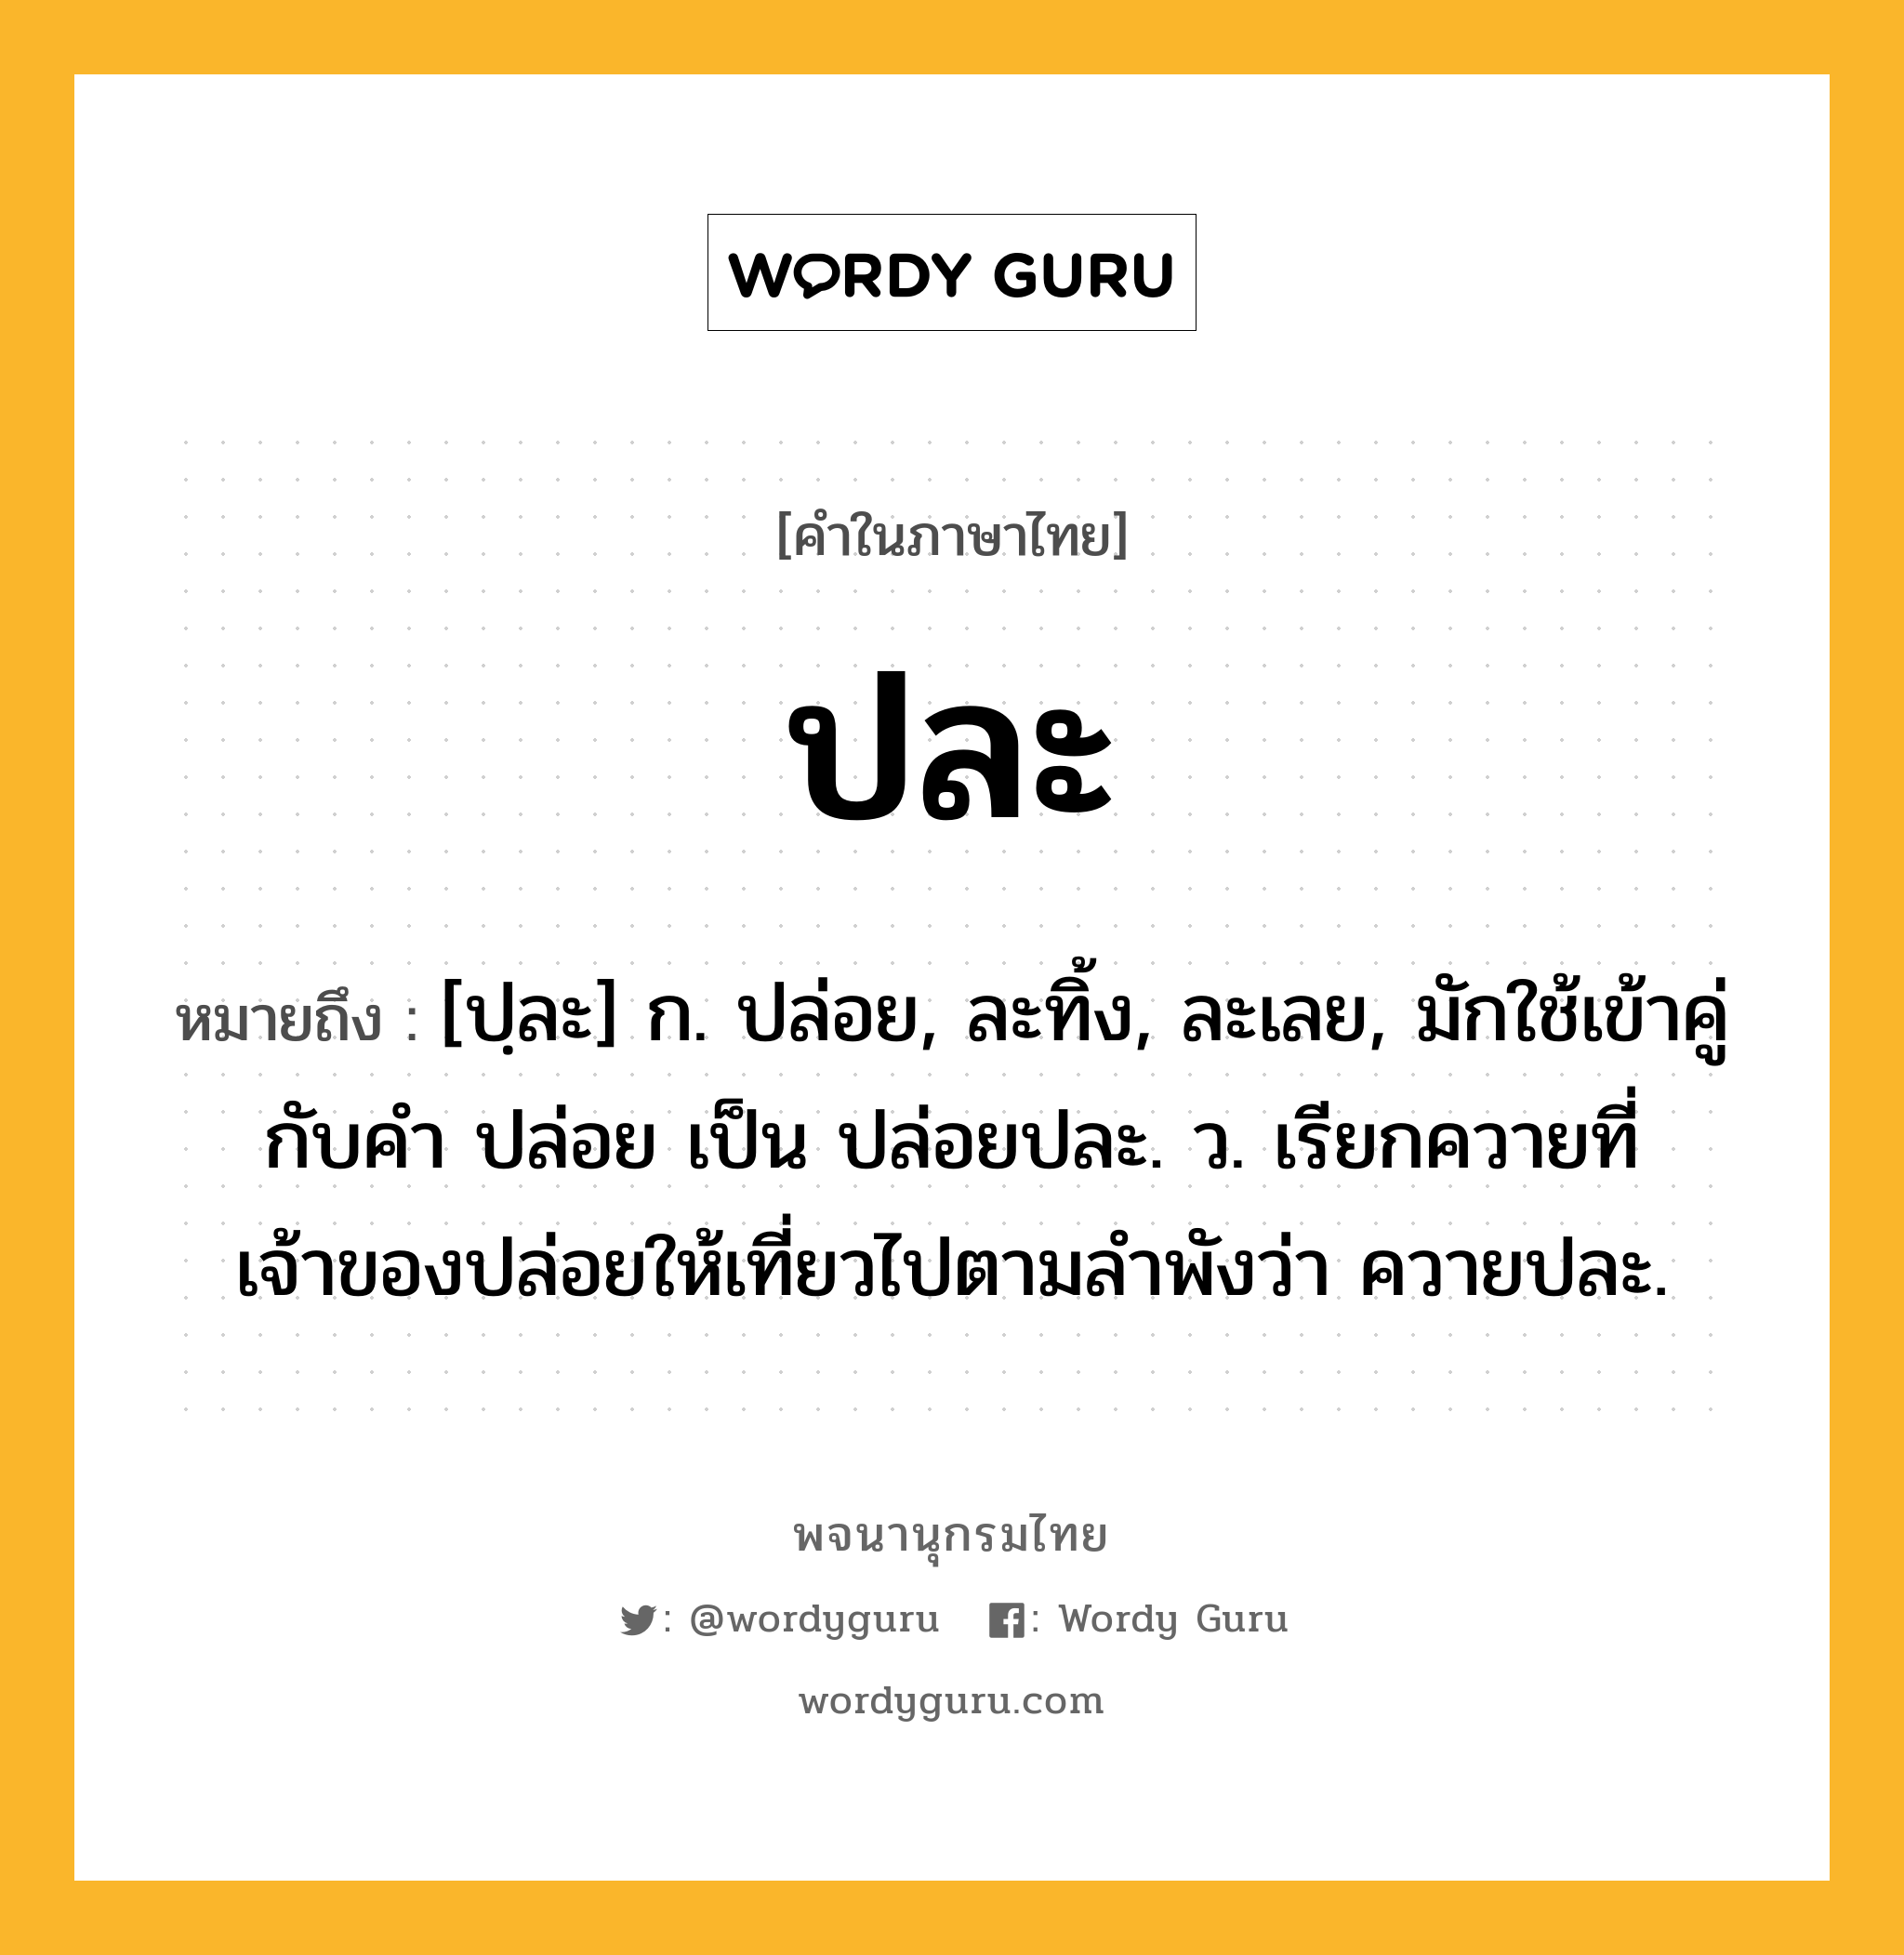 ปละ หมายถึงอะไร?, คำในภาษาไทย ปละ หมายถึง [ปฺละ] ก. ปล่อย, ละทิ้ง, ละเลย, มักใช้เข้าคู่กับคำ ปล่อย เป็น ปล่อยปละ. ว. เรียกควายที่เจ้าของปล่อยให้เที่ยวไปตามลําพังว่า ควายปละ.